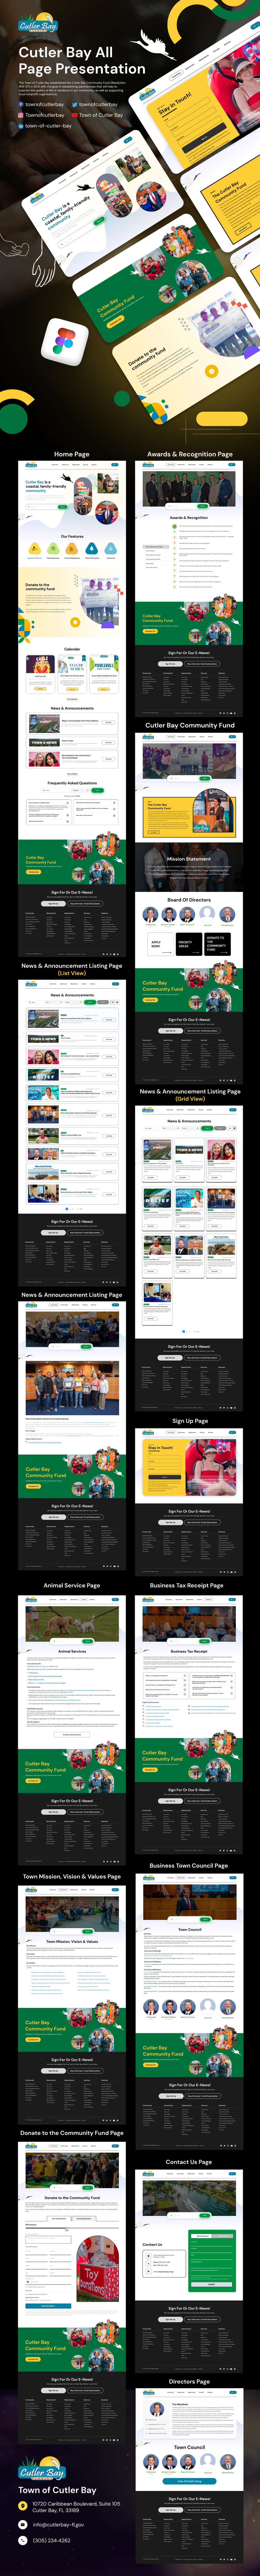 Cutler Bay Website UX Design Presentation